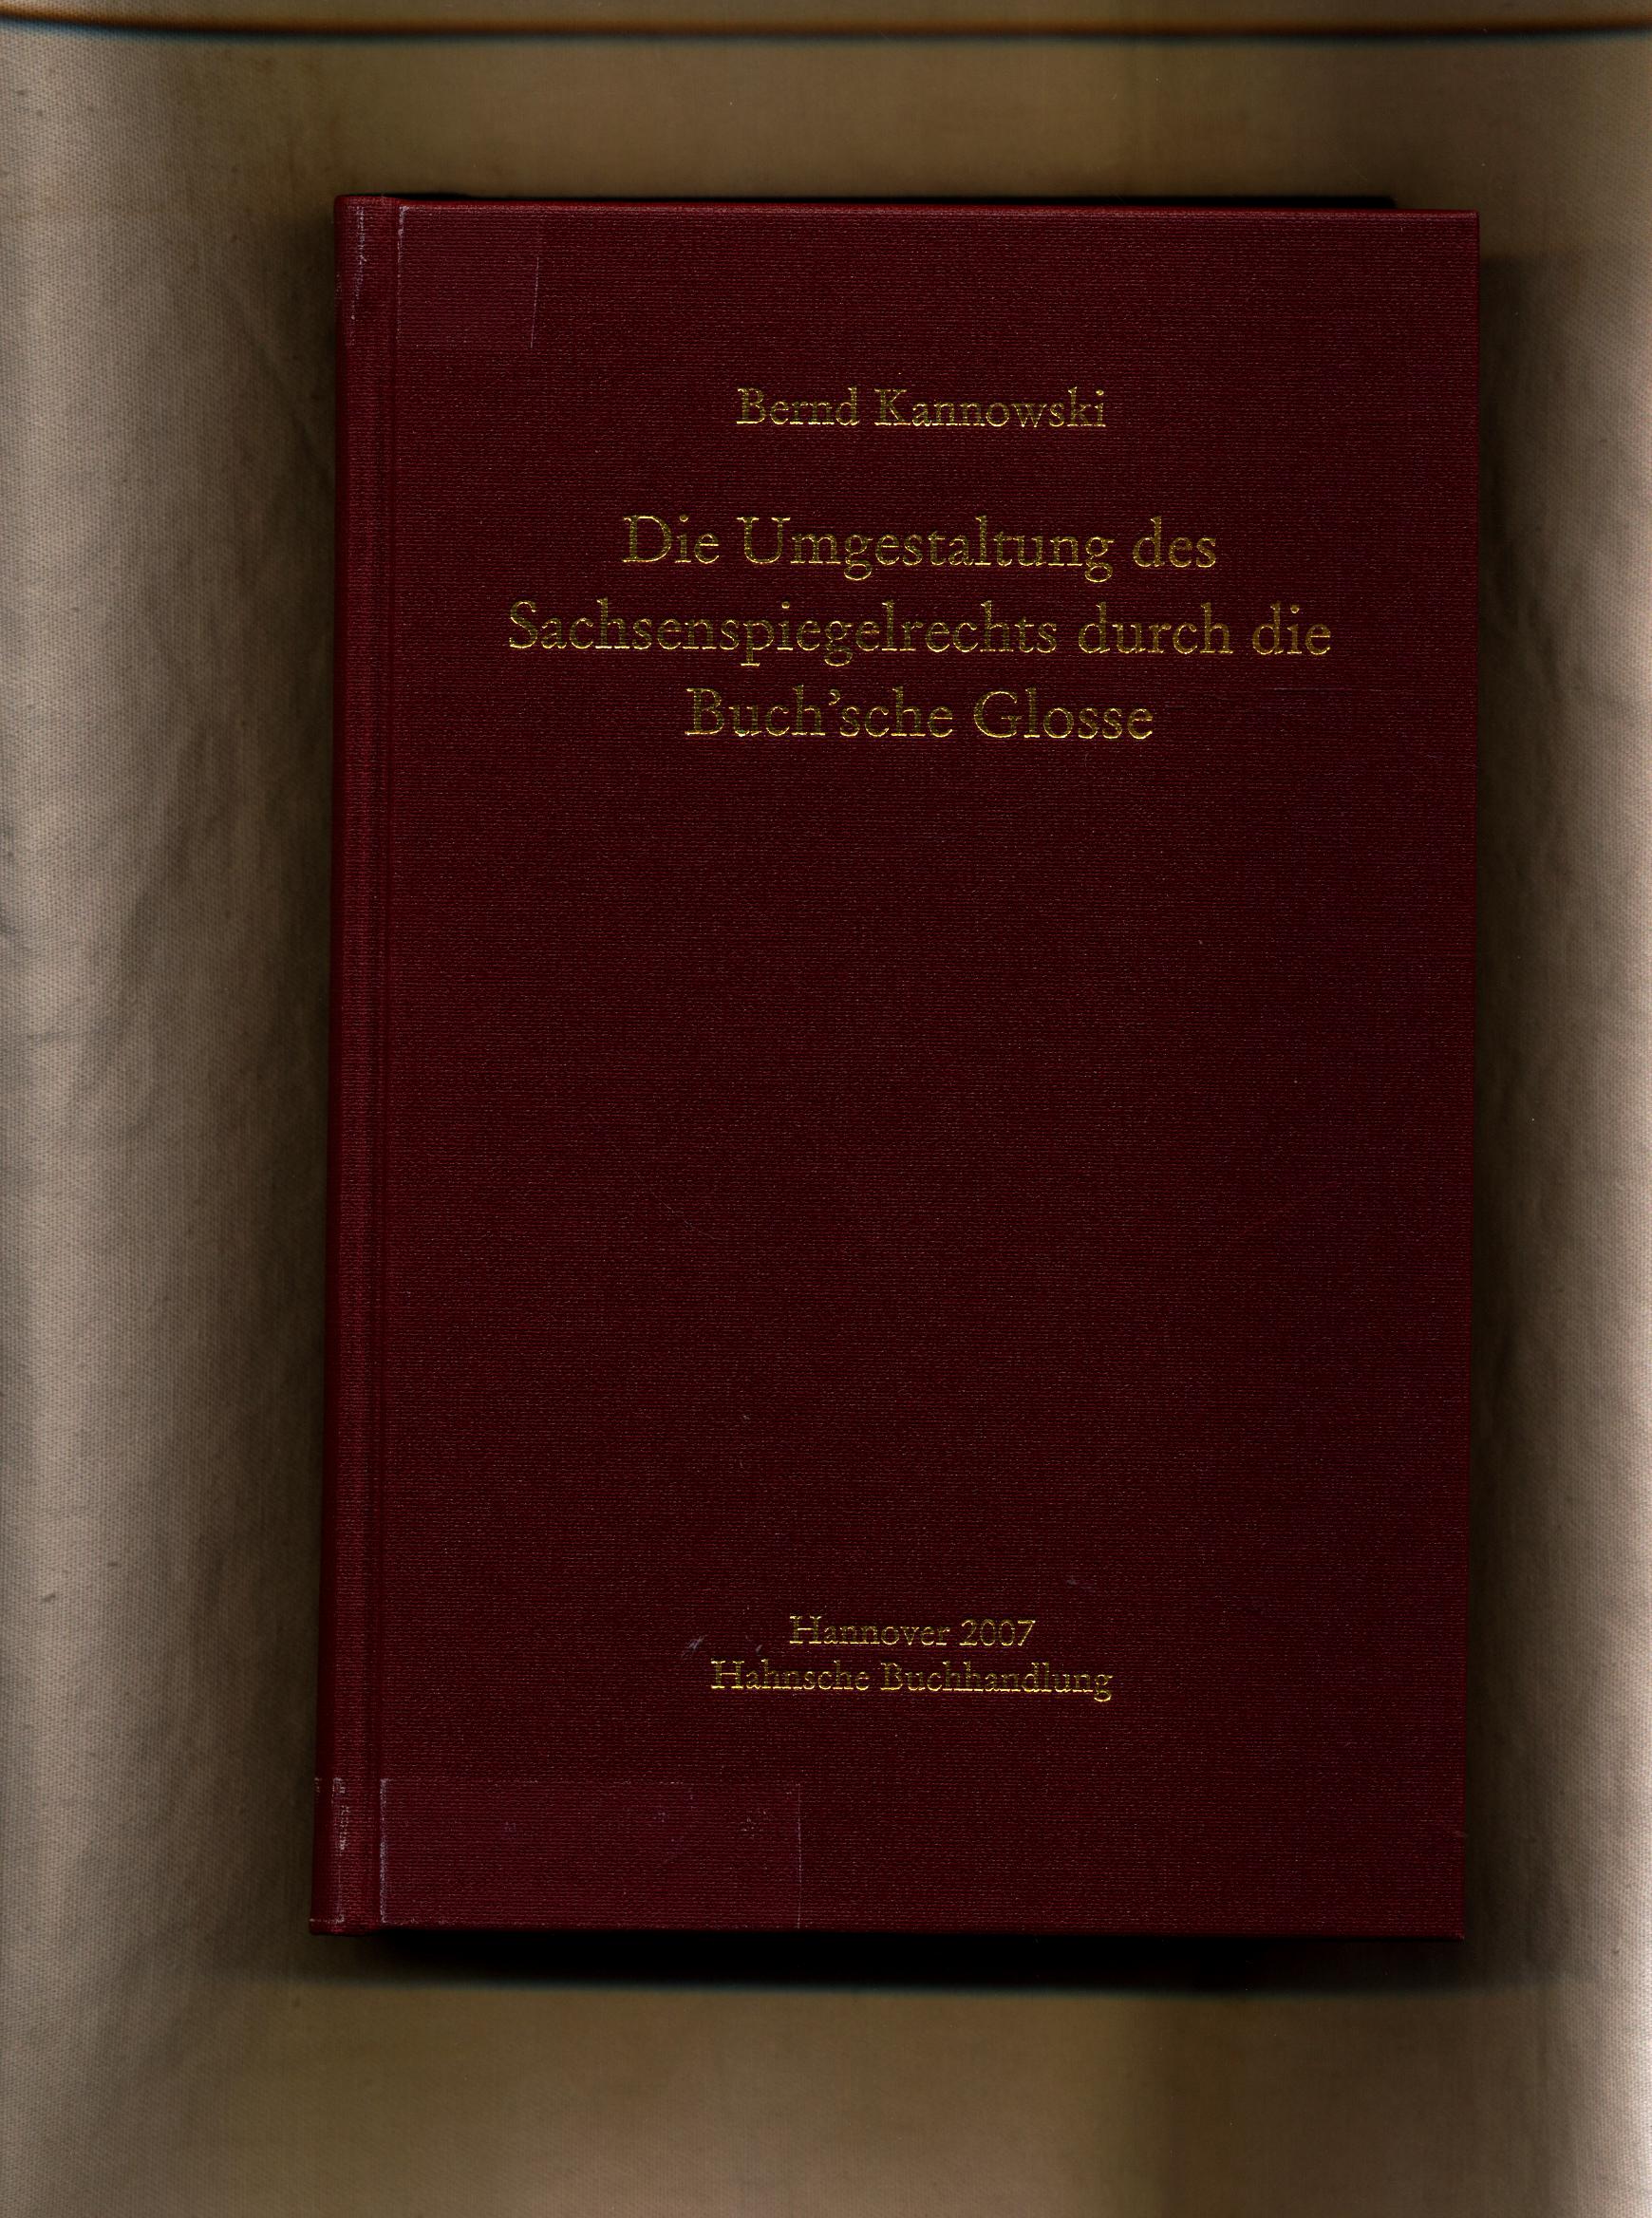 Die Umgestaltung des Sachsenspiegelrechts durch die Buch'sche Glosse - Kannowski, Bernd